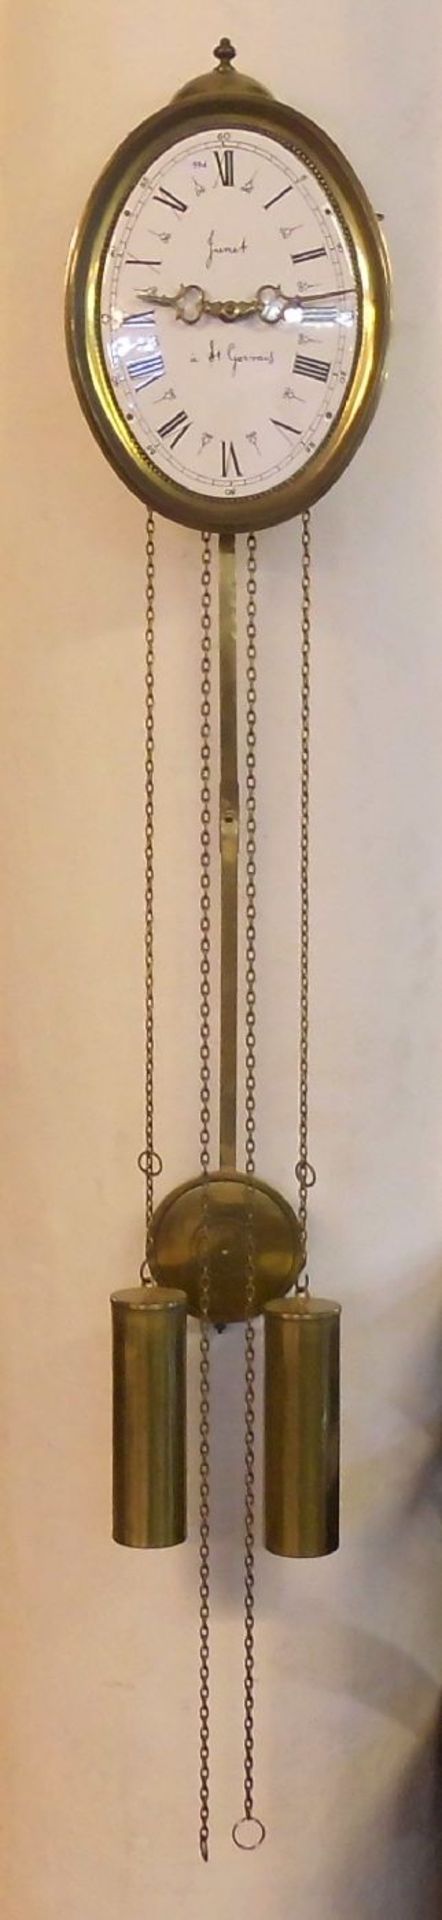 WANDUHR in der Art einer Comtoise / clock, Eisengehäuse mit bekrönender Glocke, ovales